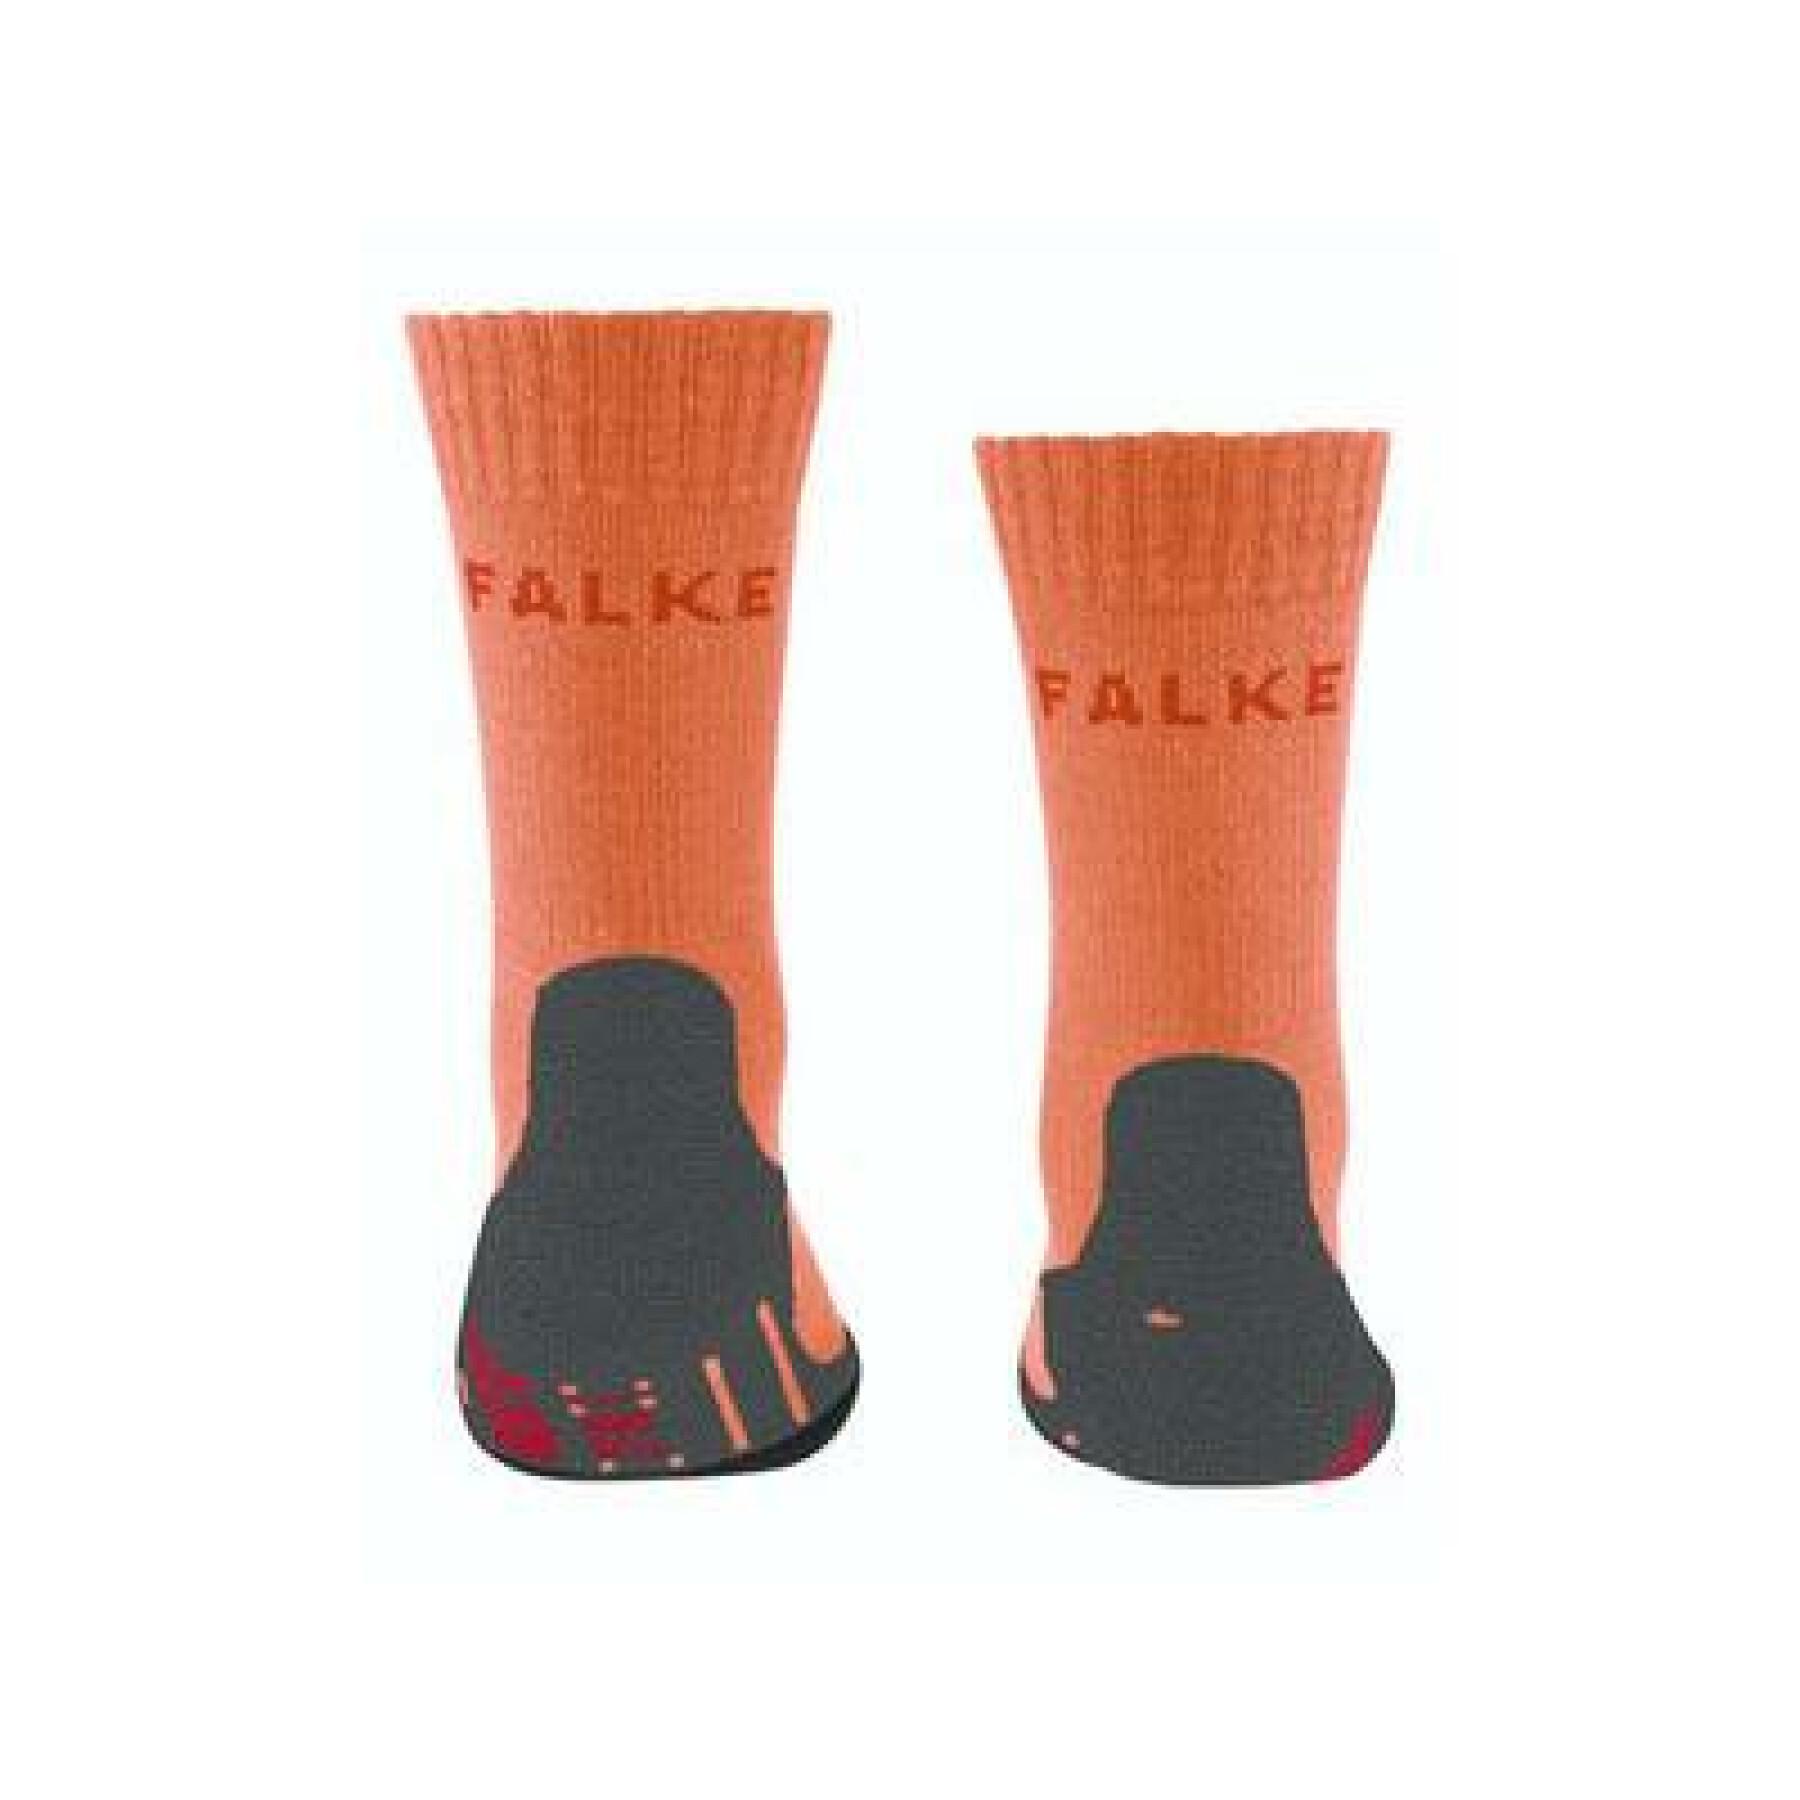 Children's socks Falke tk2